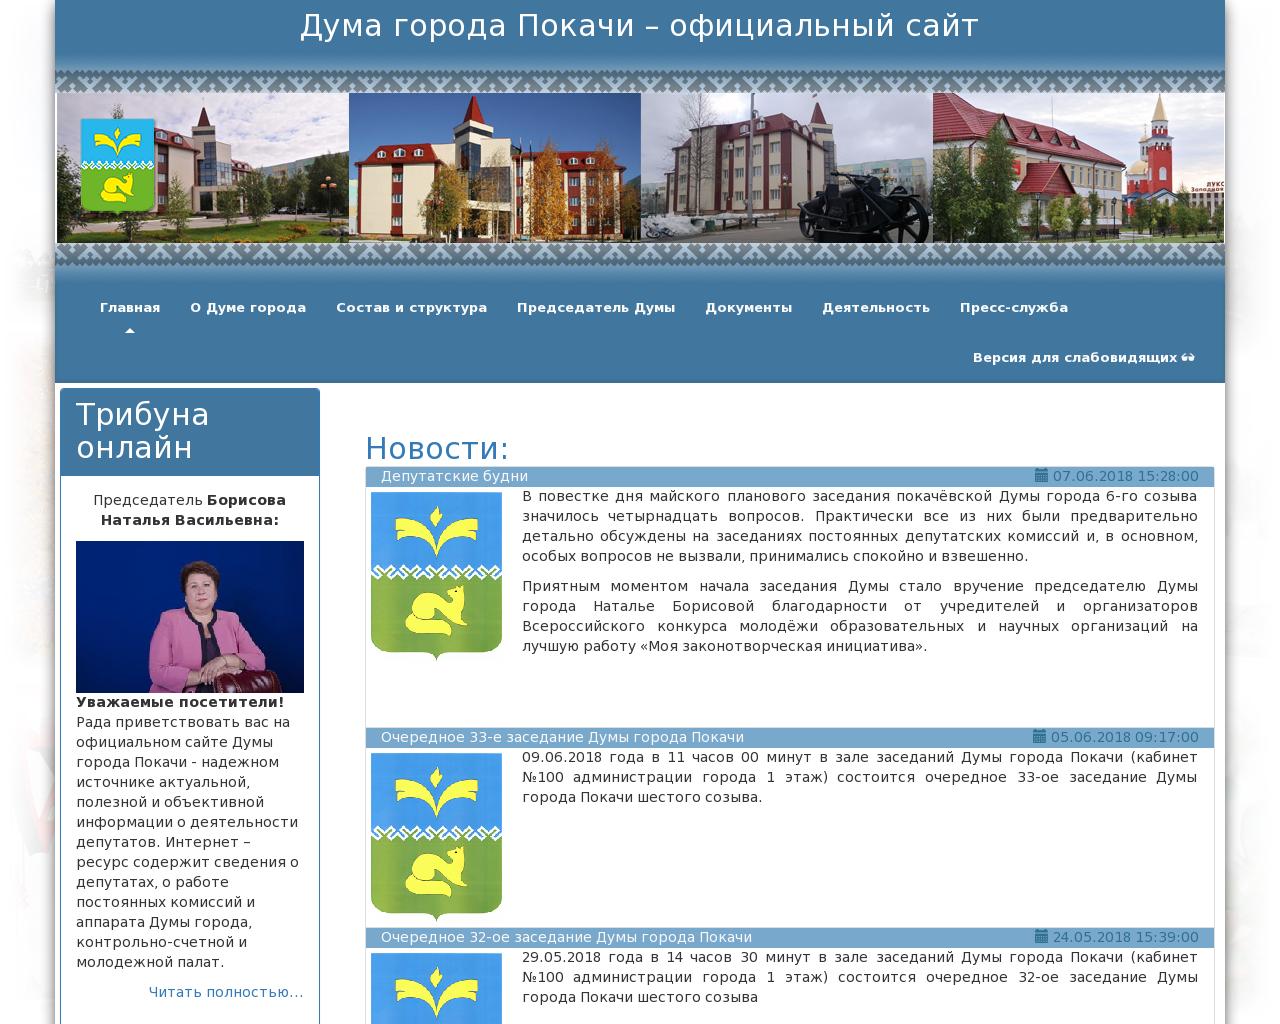 Изображение сайта dumapokachi.ru в разрешении 1280x1024